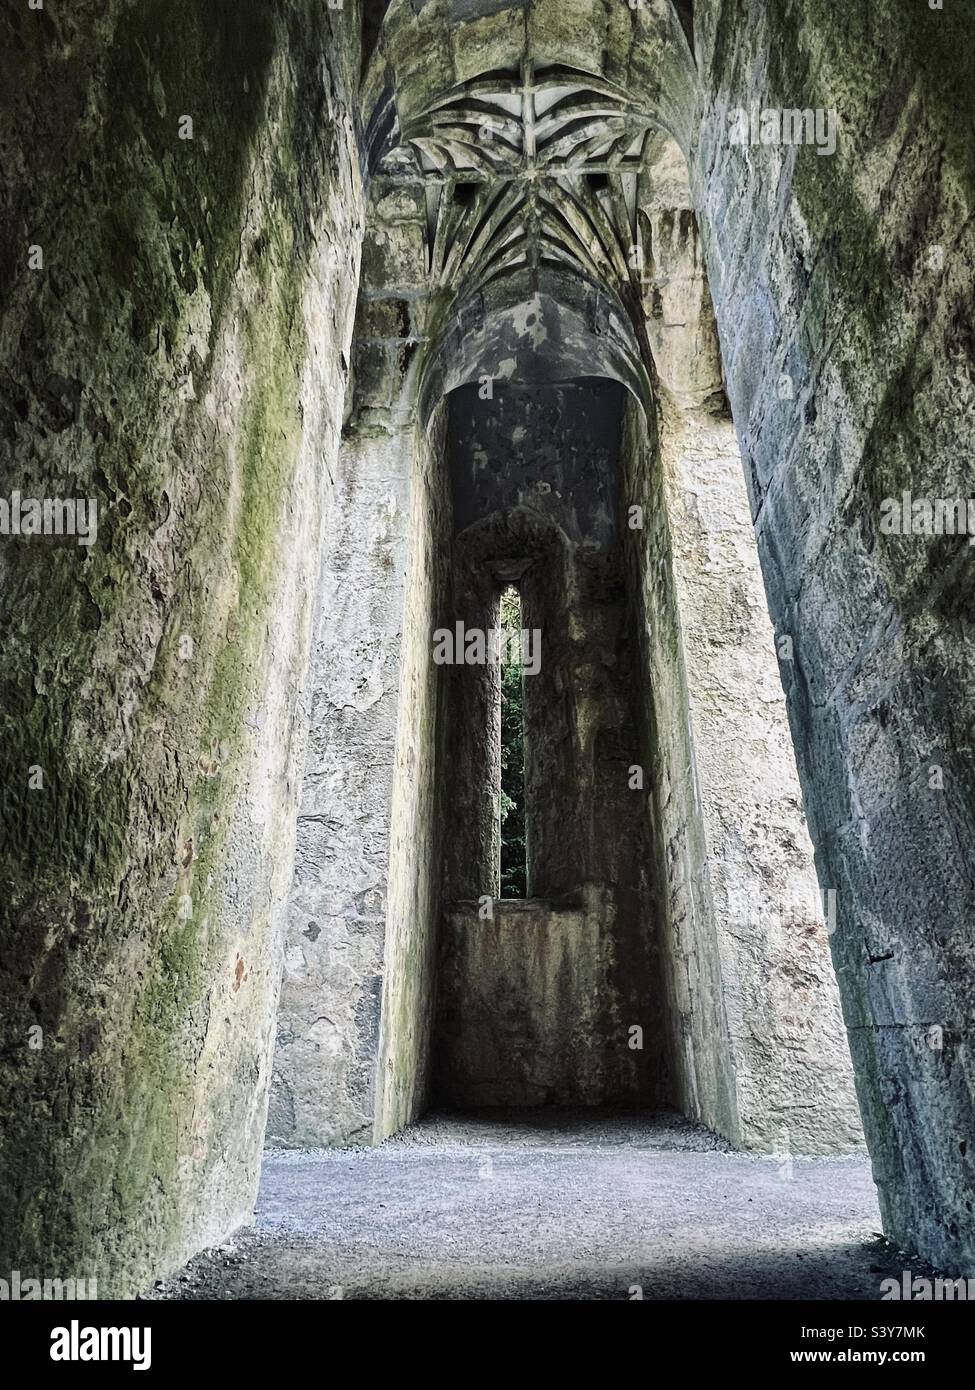 Abandoned dramatic muckross abbey Ireland Stock Photo